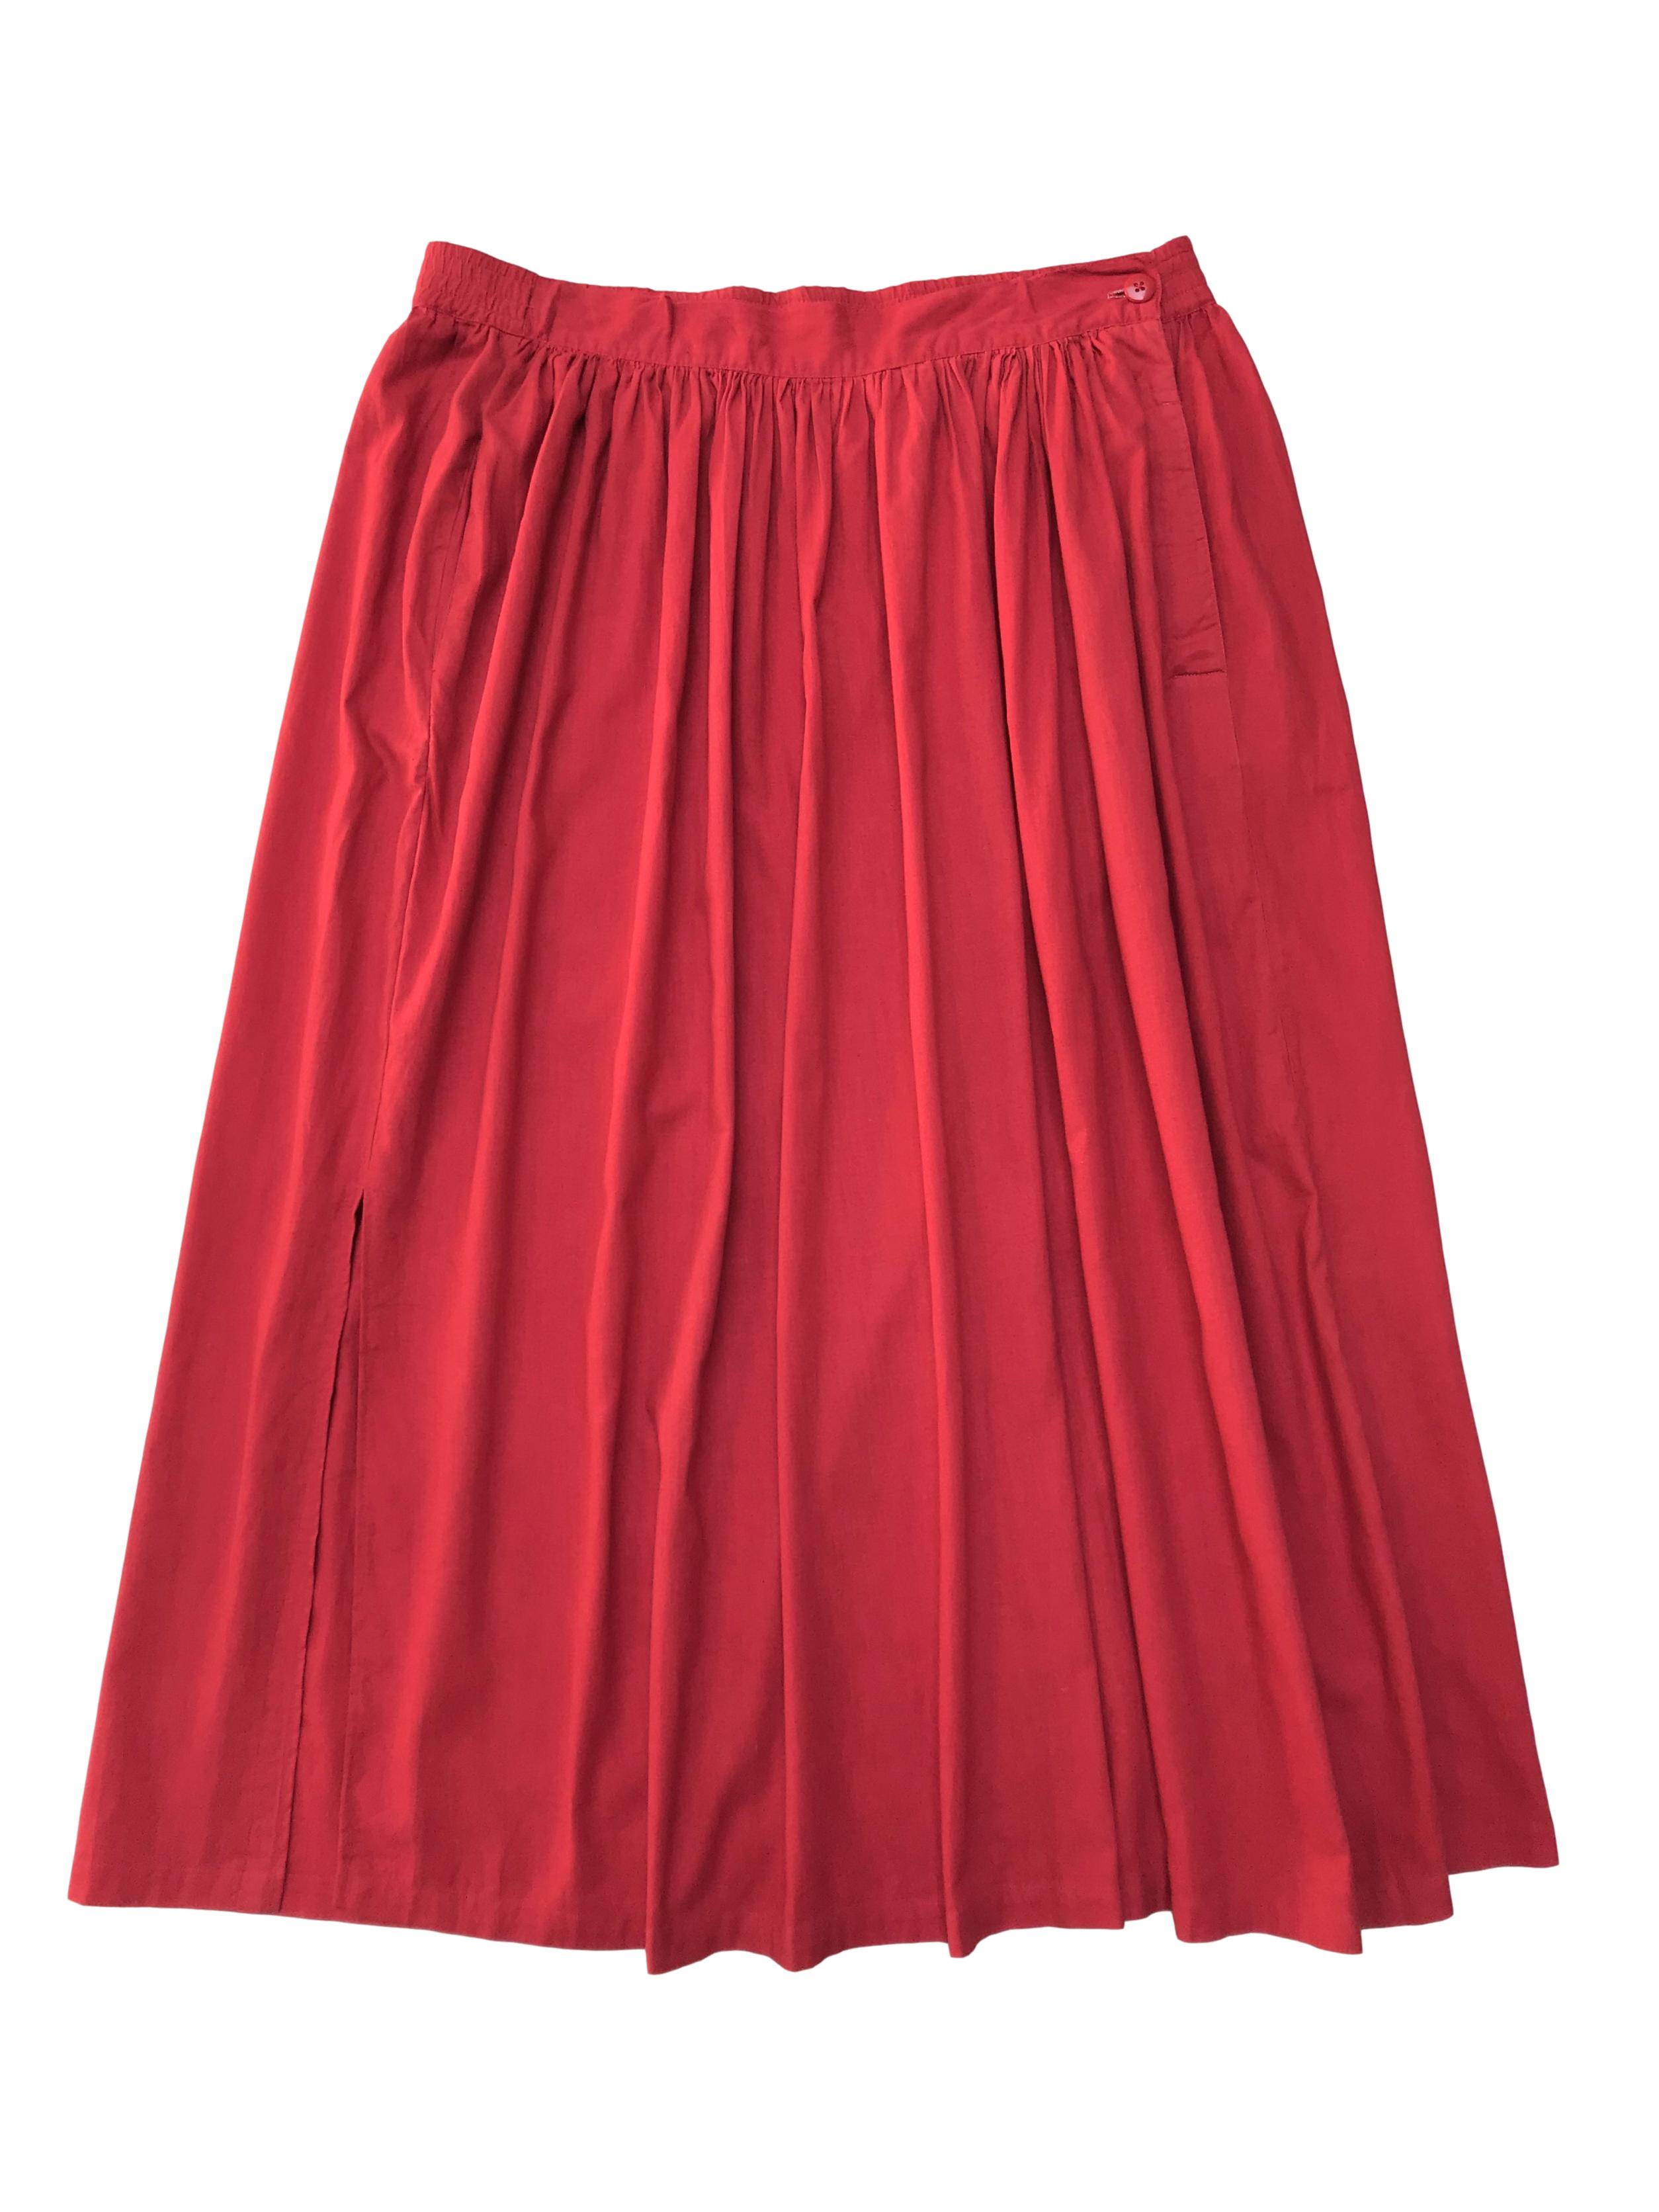 Falda larga vintage roja con  bolsillos laterales, cierra con botones al lado y tiene abertura en la basta. Cintura 90cm Largo 87cm